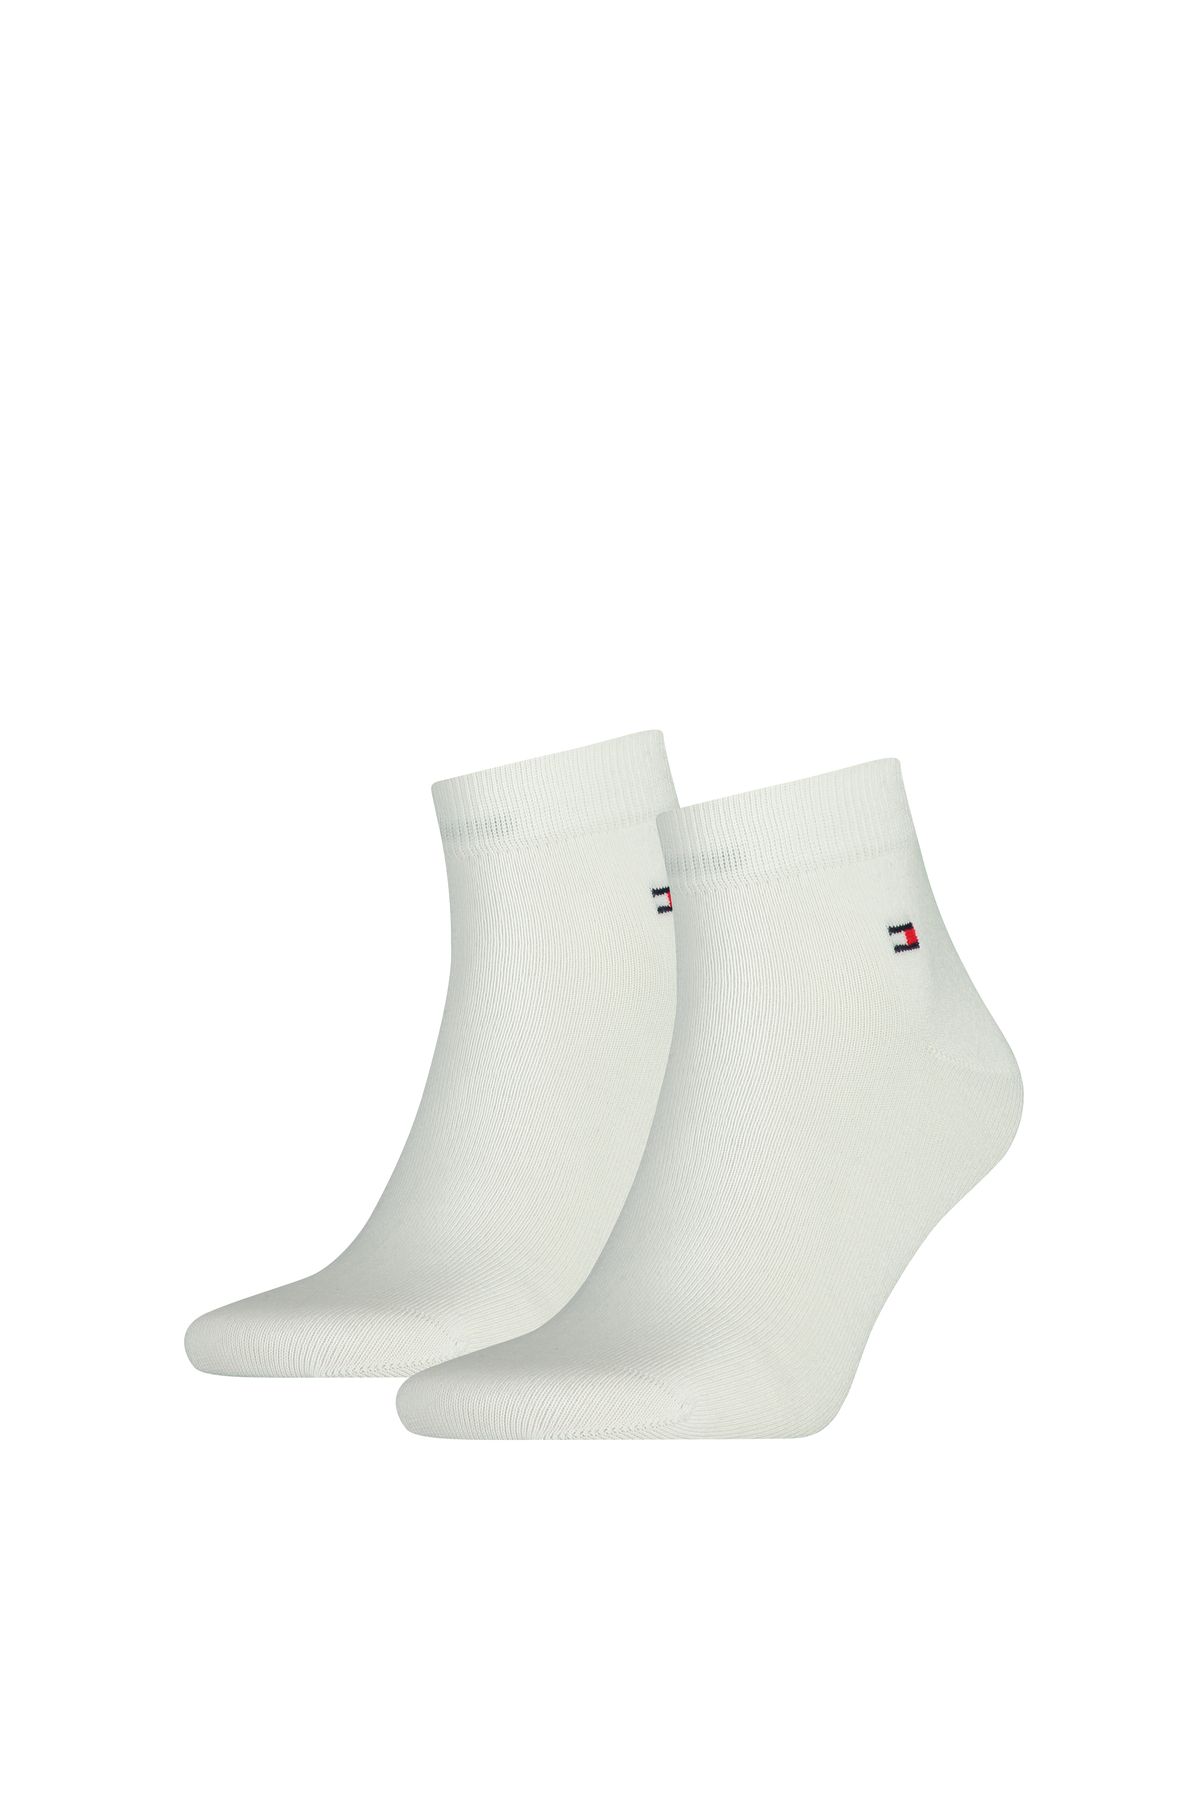 Tommy Hilfiger Erkek Marka Logolu Pamukllu Kısa Günlük Kullanıma Uygun Beyaz Çorap 09a3425001-300